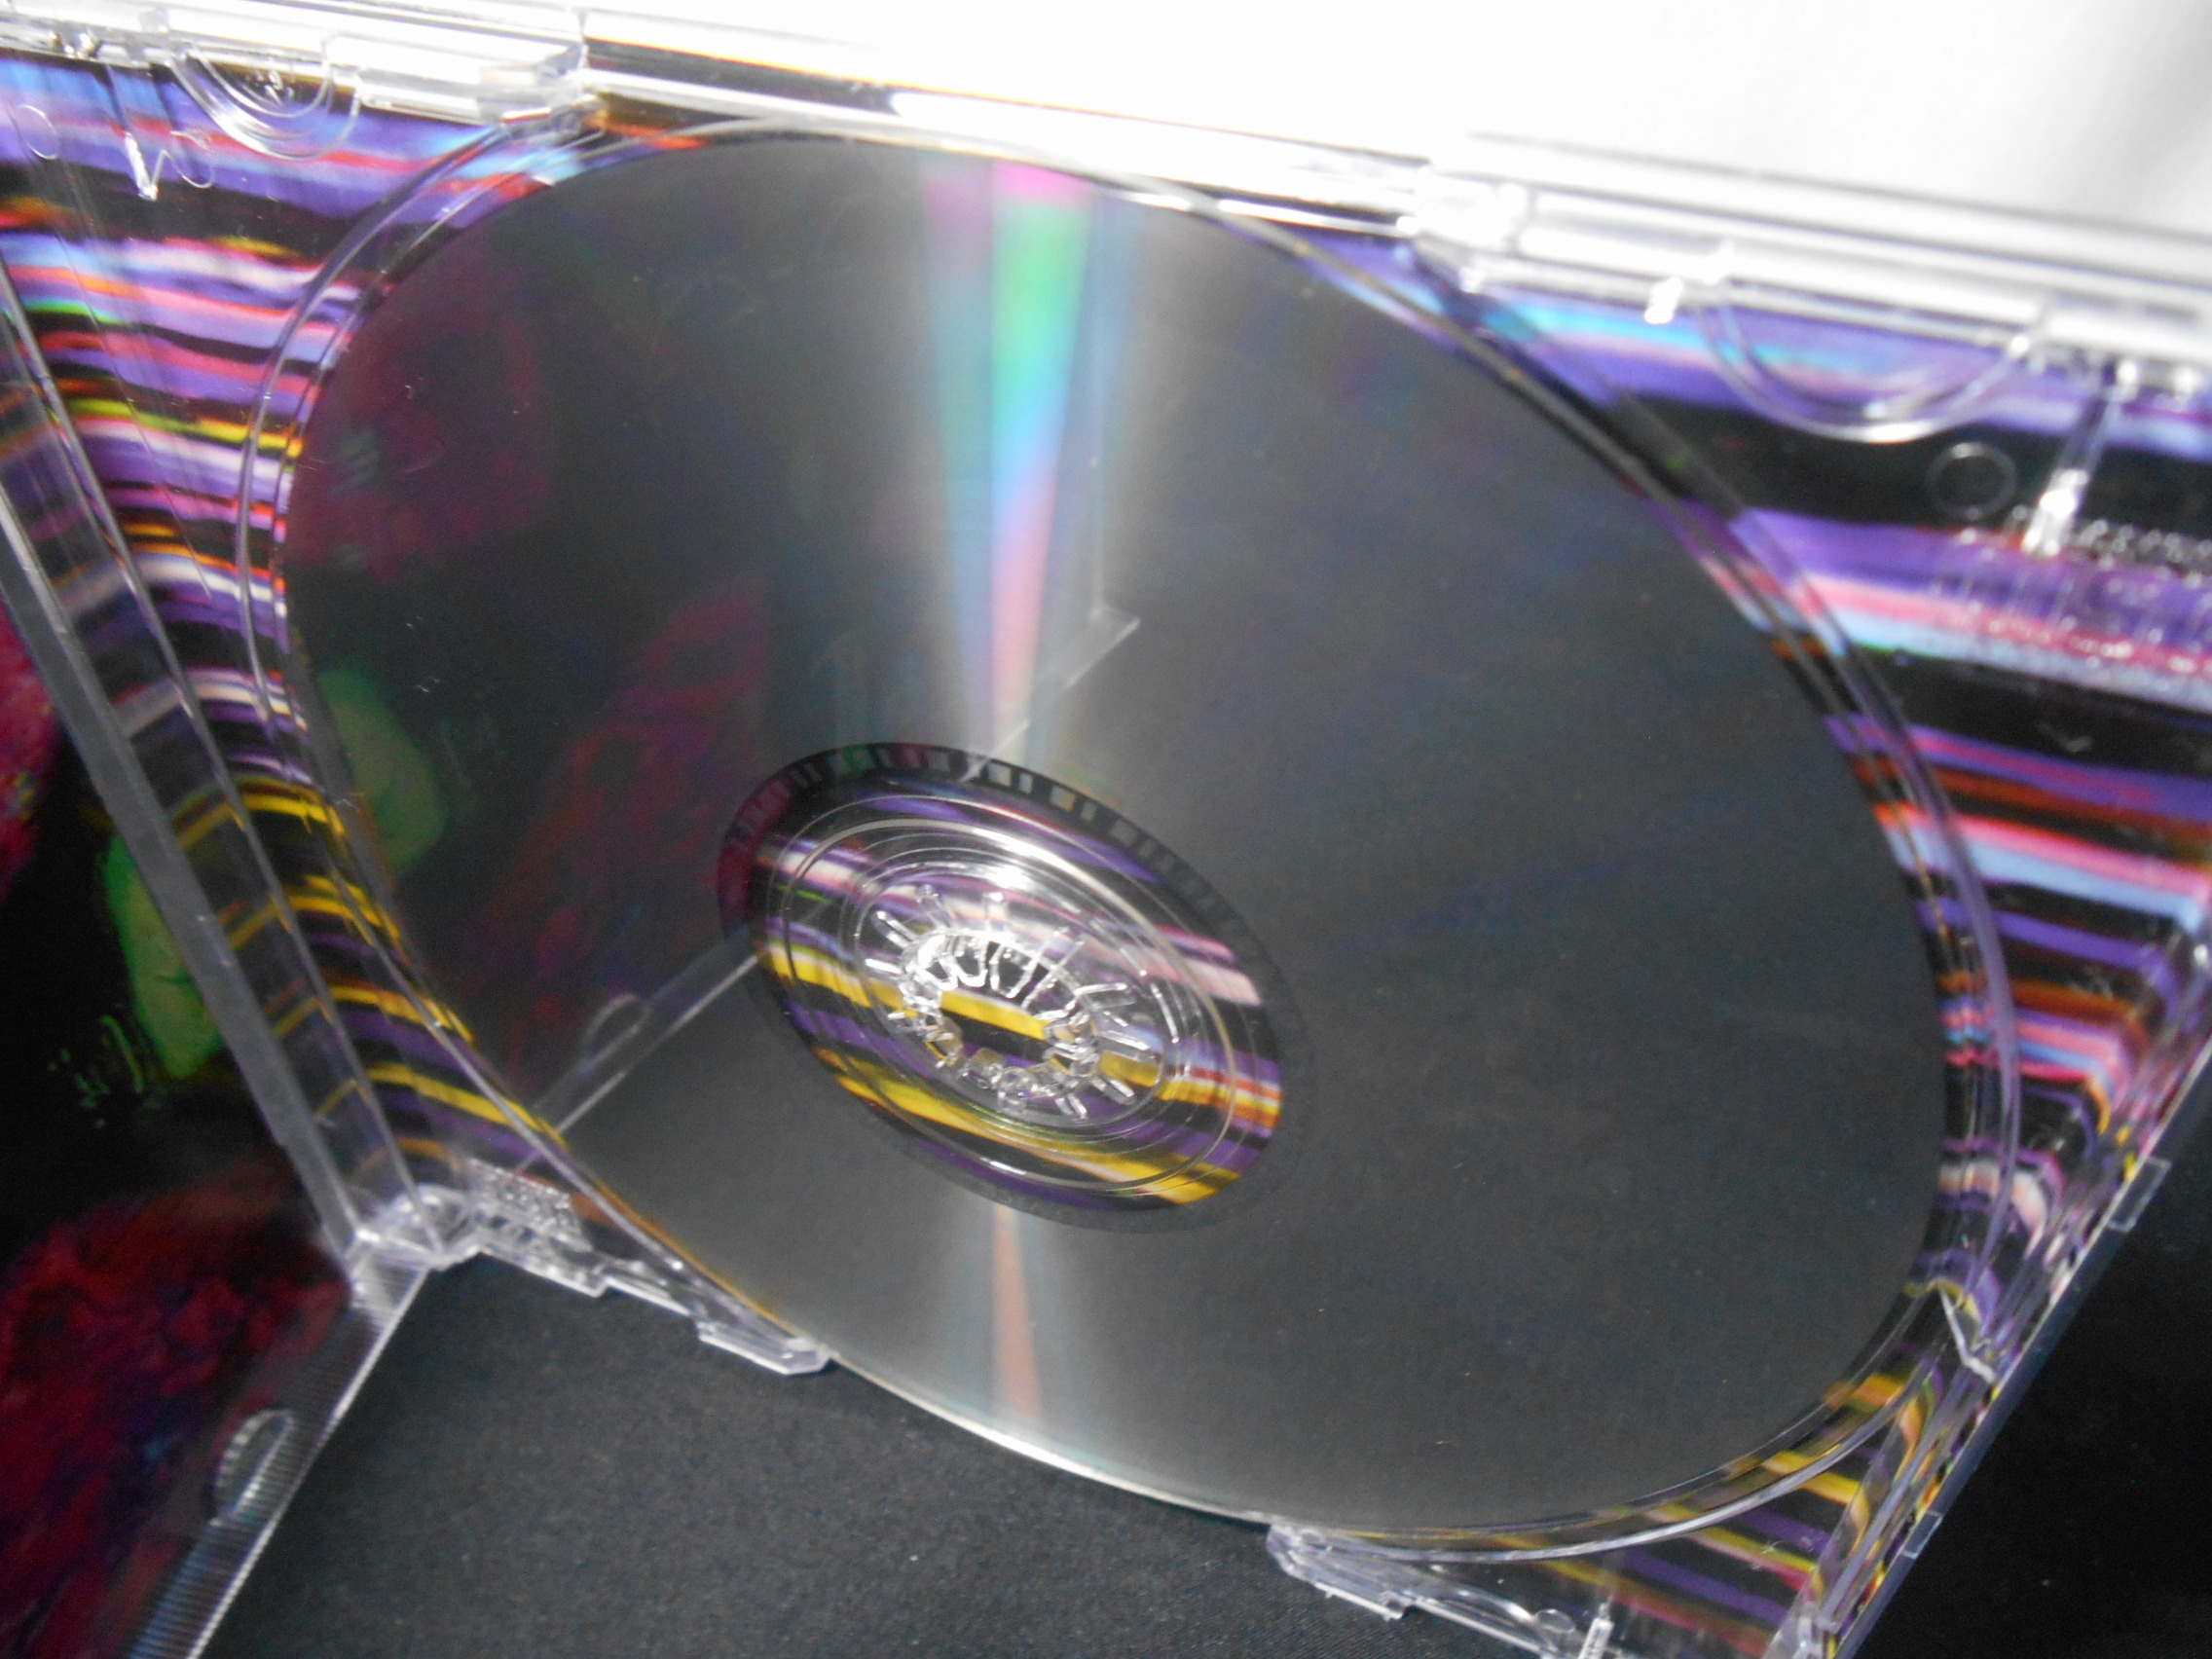 CD - U2 - Zooropa